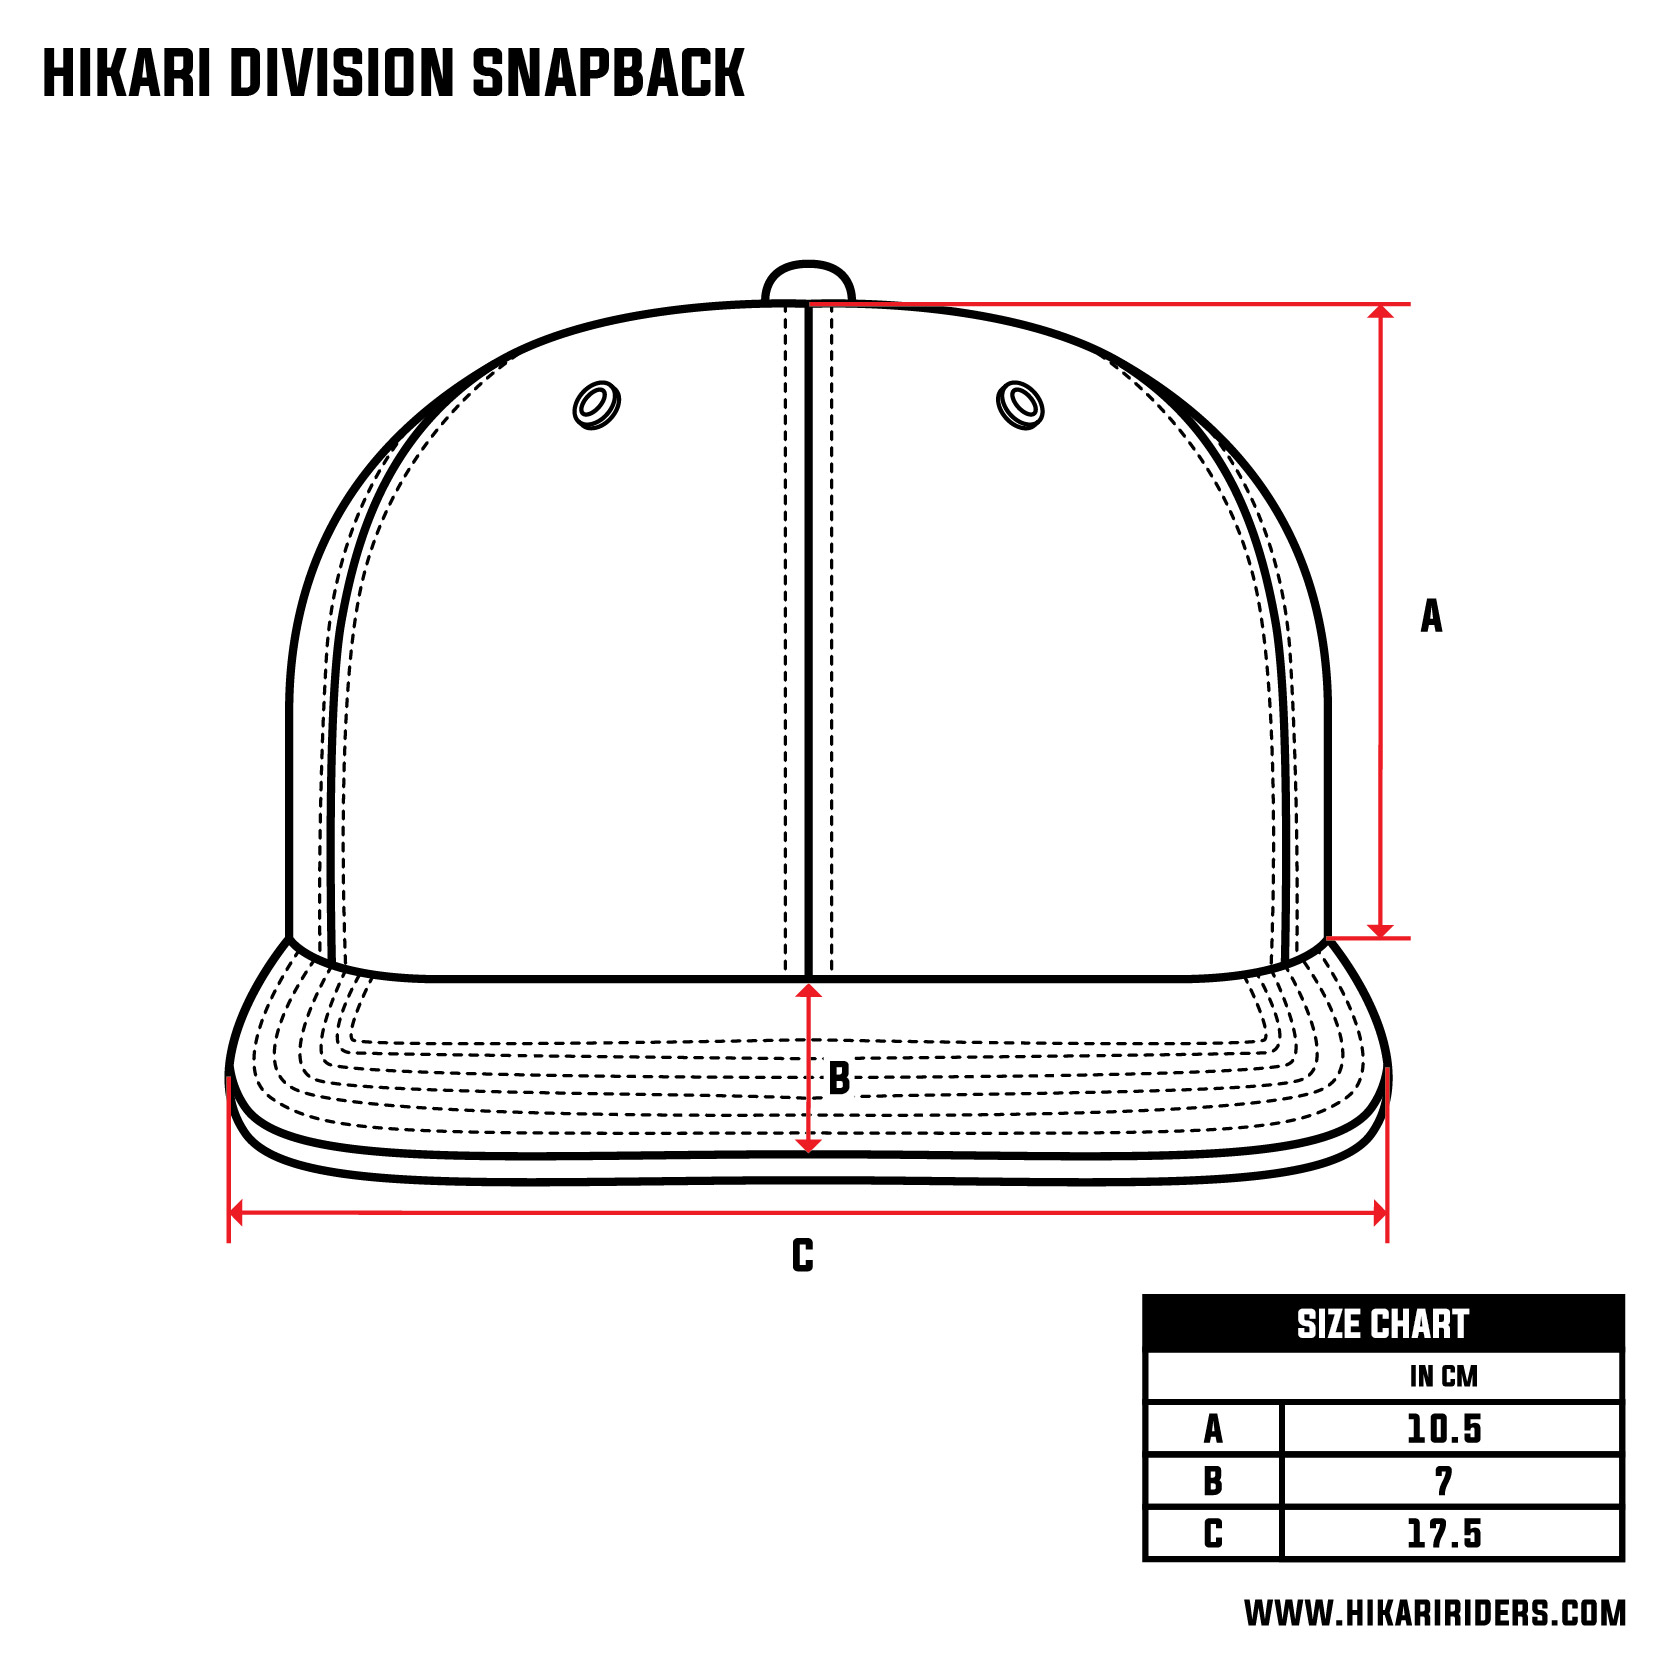 Hikari Division Snapback.jpg